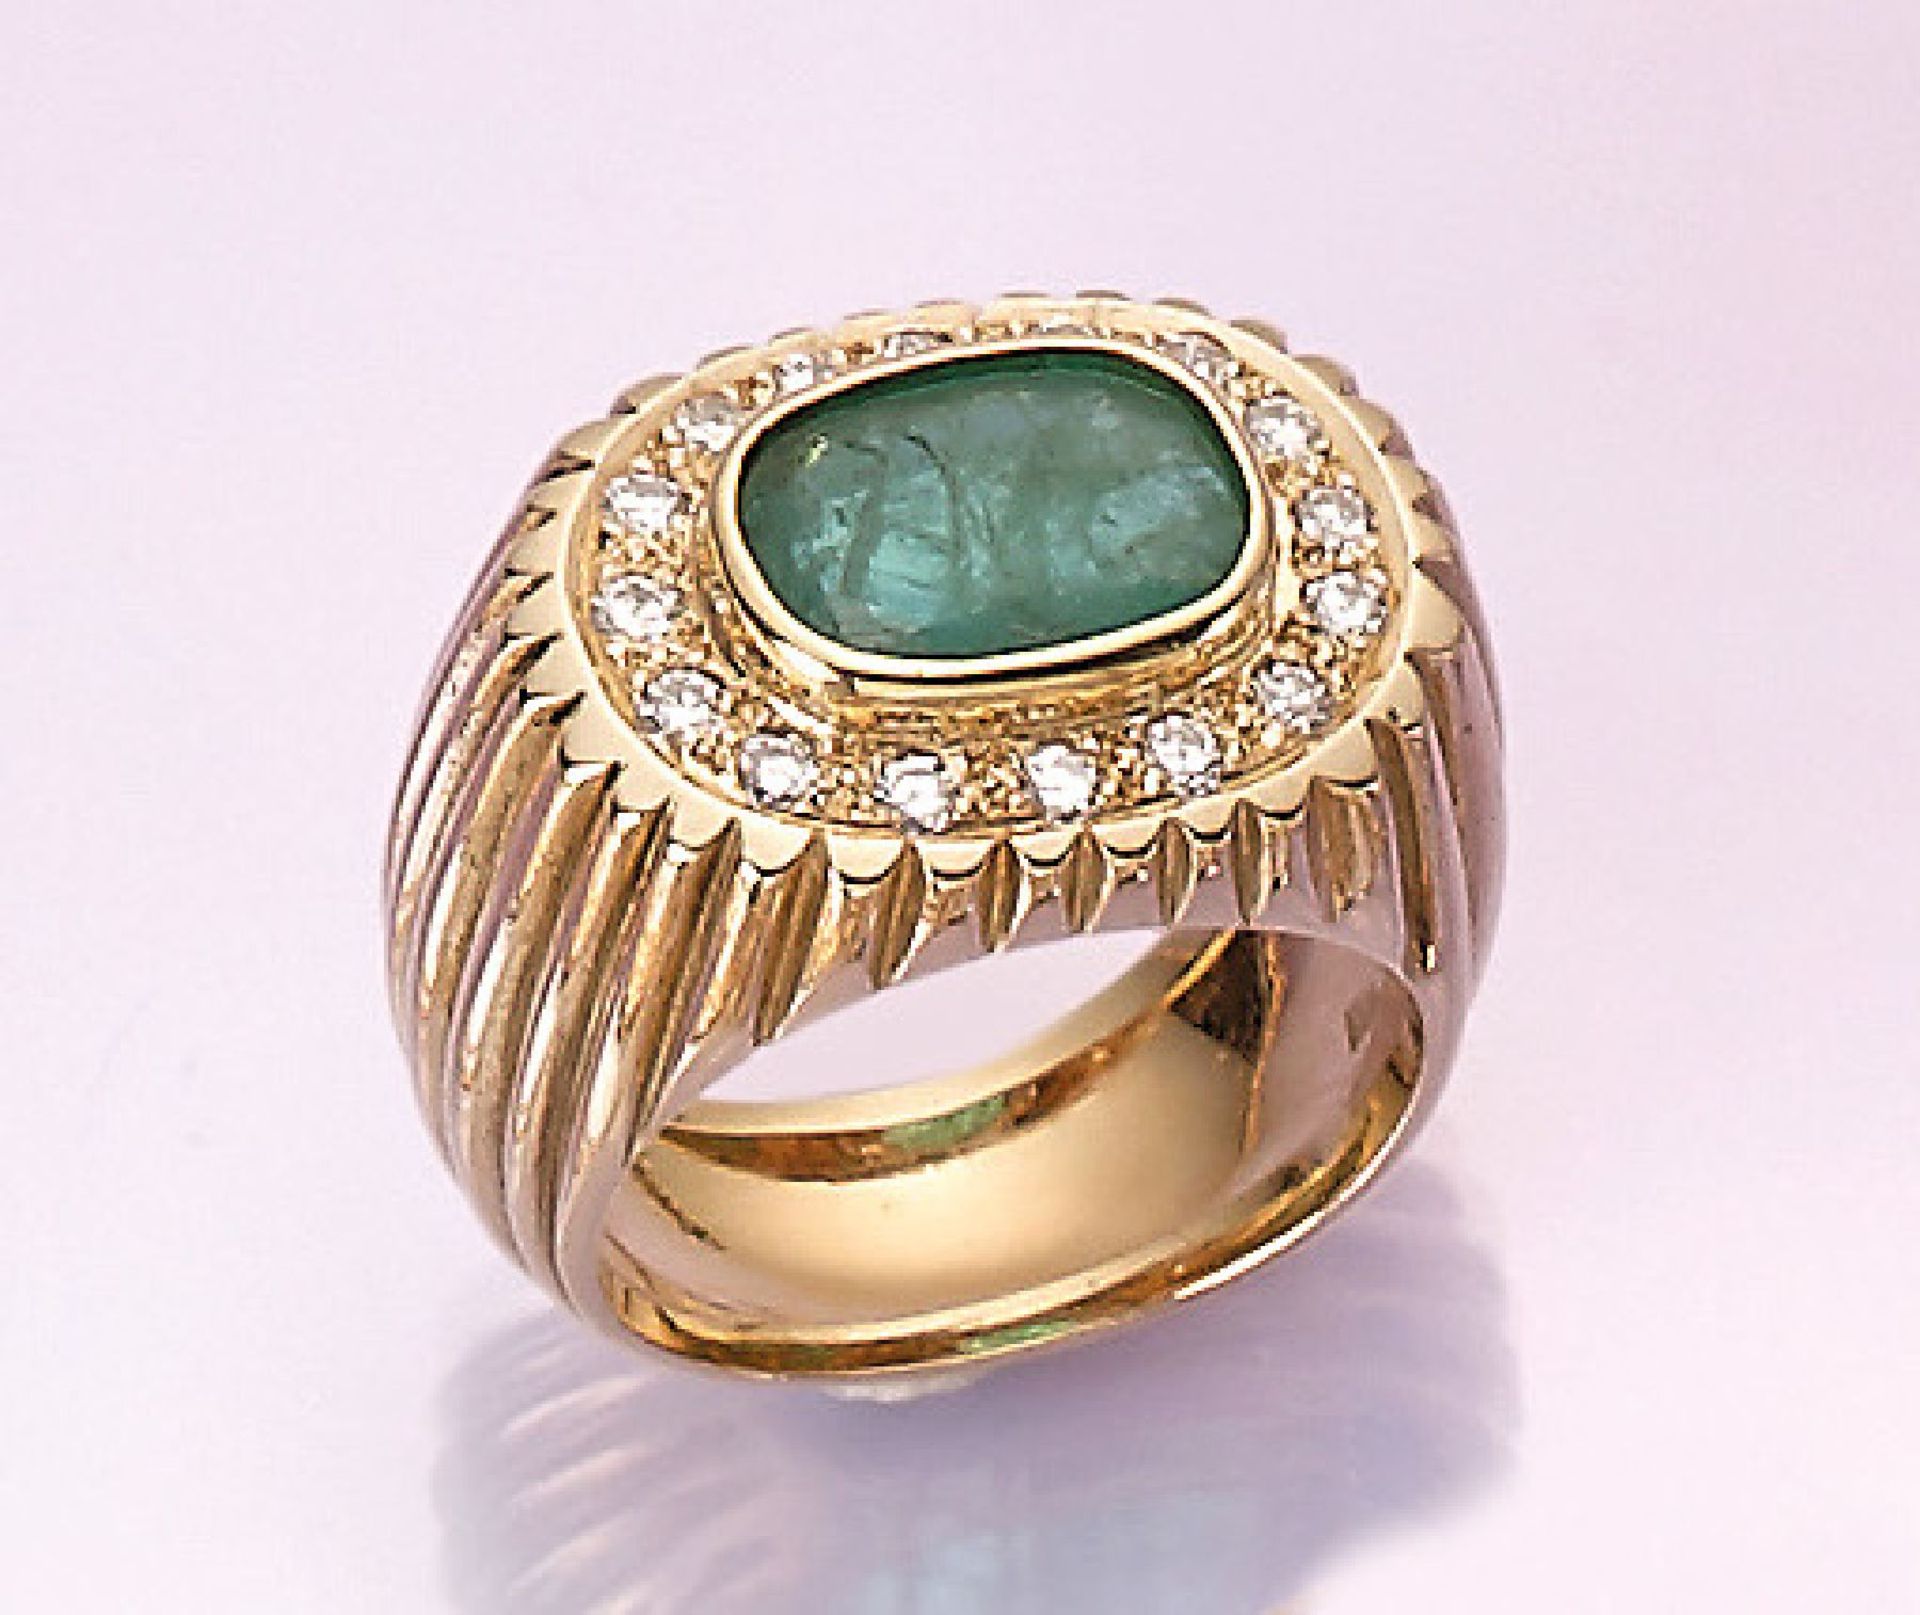 14 kt Gold Ring mit Smaragden und Brillanten, GG 585/000, ovalfacett. Smaragd ca. 4.70 ct, umrahmt